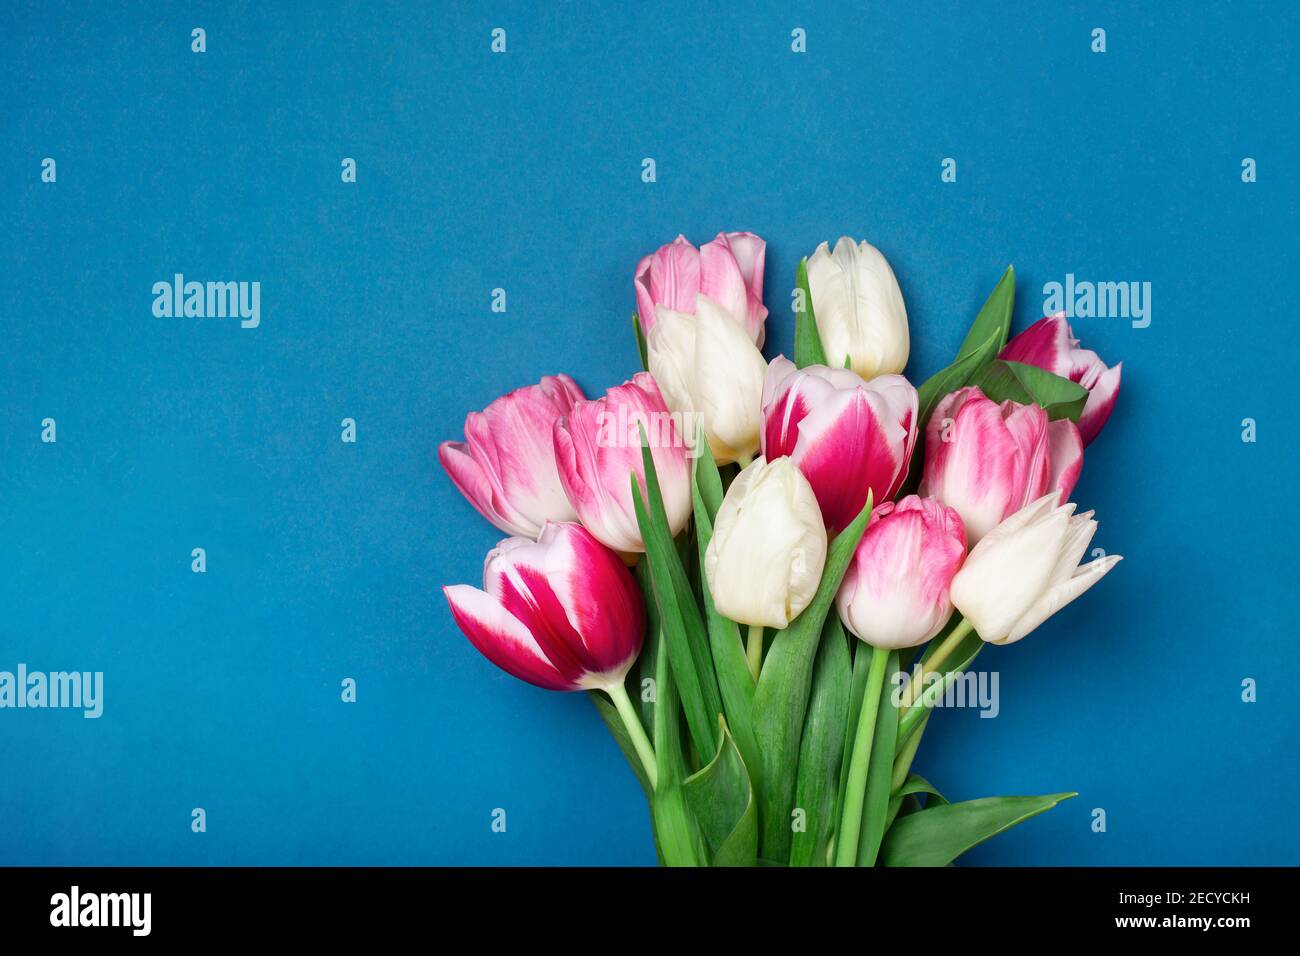 Bouquet de tulipes de couleur rose et blanche sur fond bleu. Concept du printemps, Journée des femmes, Fête des mères, 8 mars, les voeux de vacances. Espace de copie, plan de travail. Banque D'Images